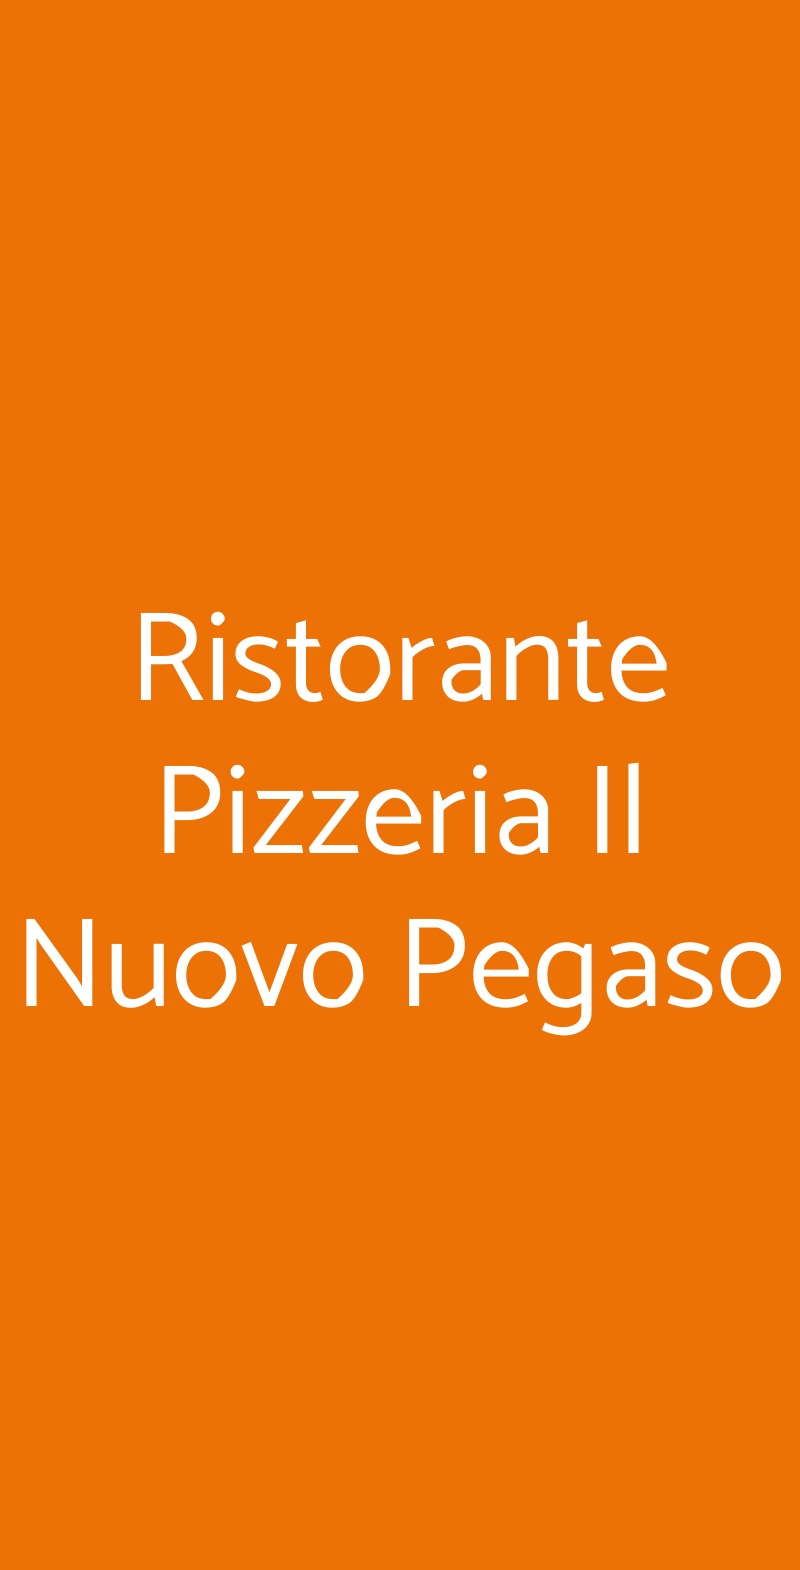 Ristorante Pizzeria Il Nuovo Pegaso Barzago menù 1 pagina